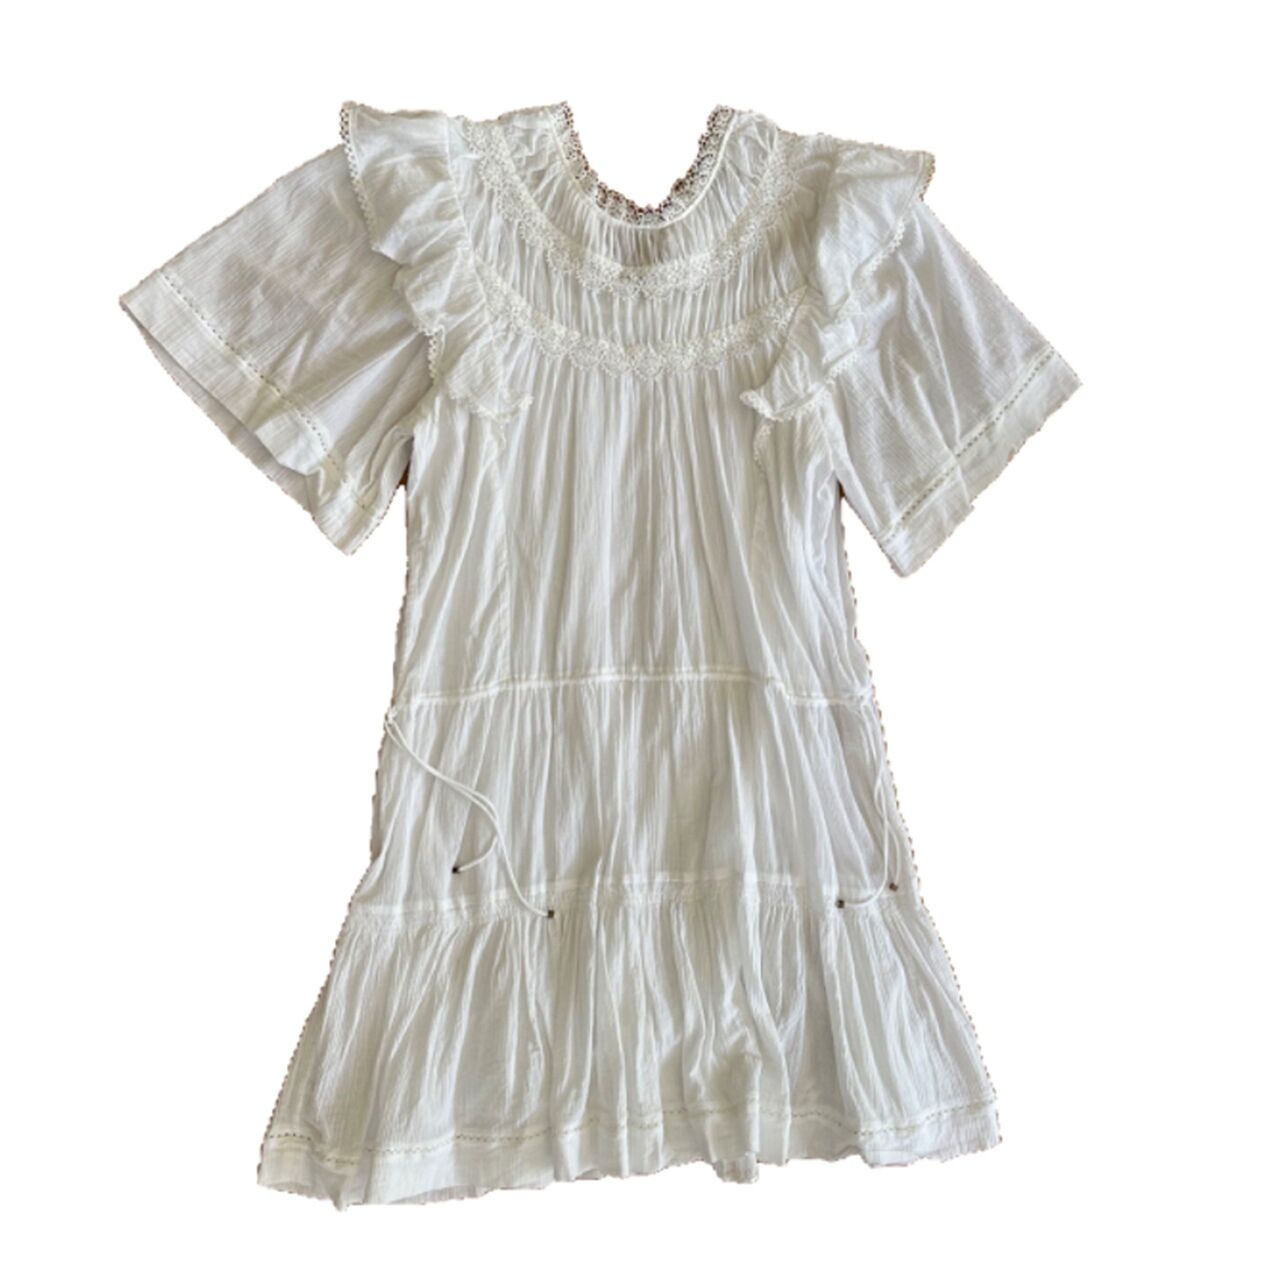 Magali Pascal White Mini Dress